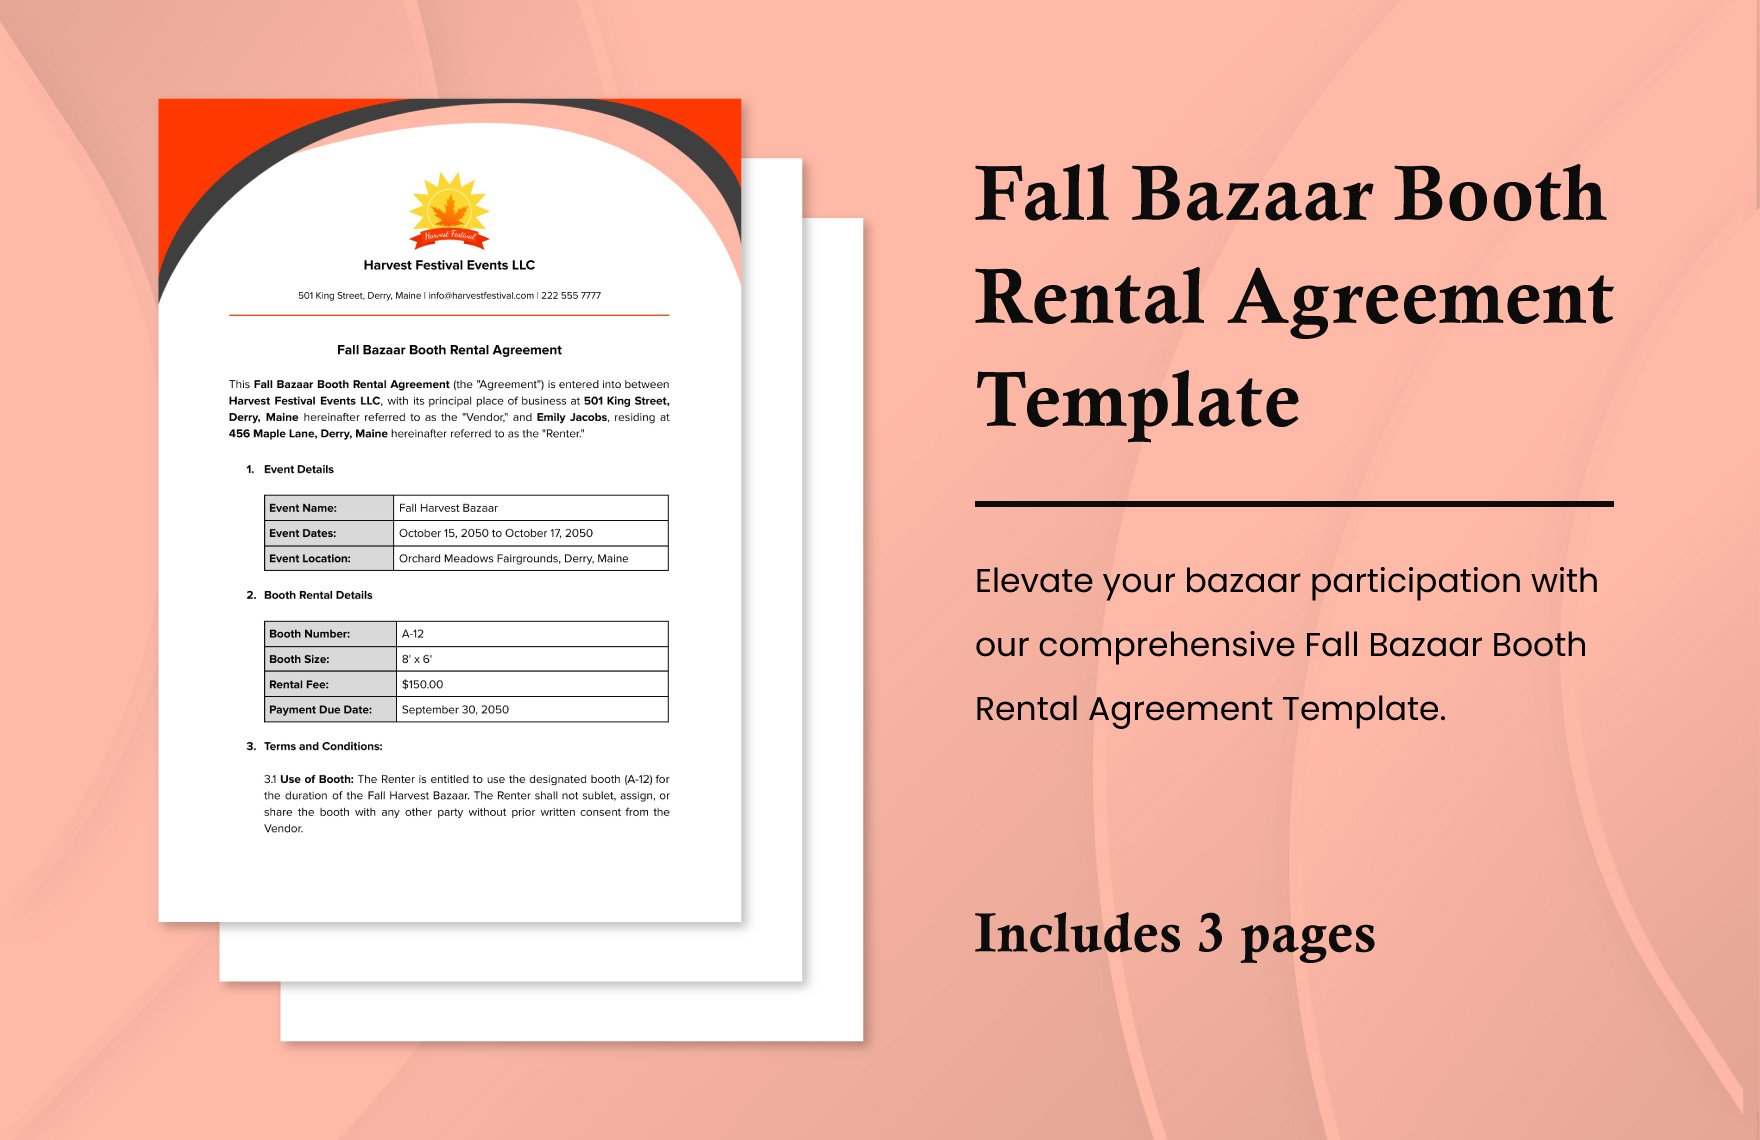 Fall Bazaar Booth Rental Agreement Template